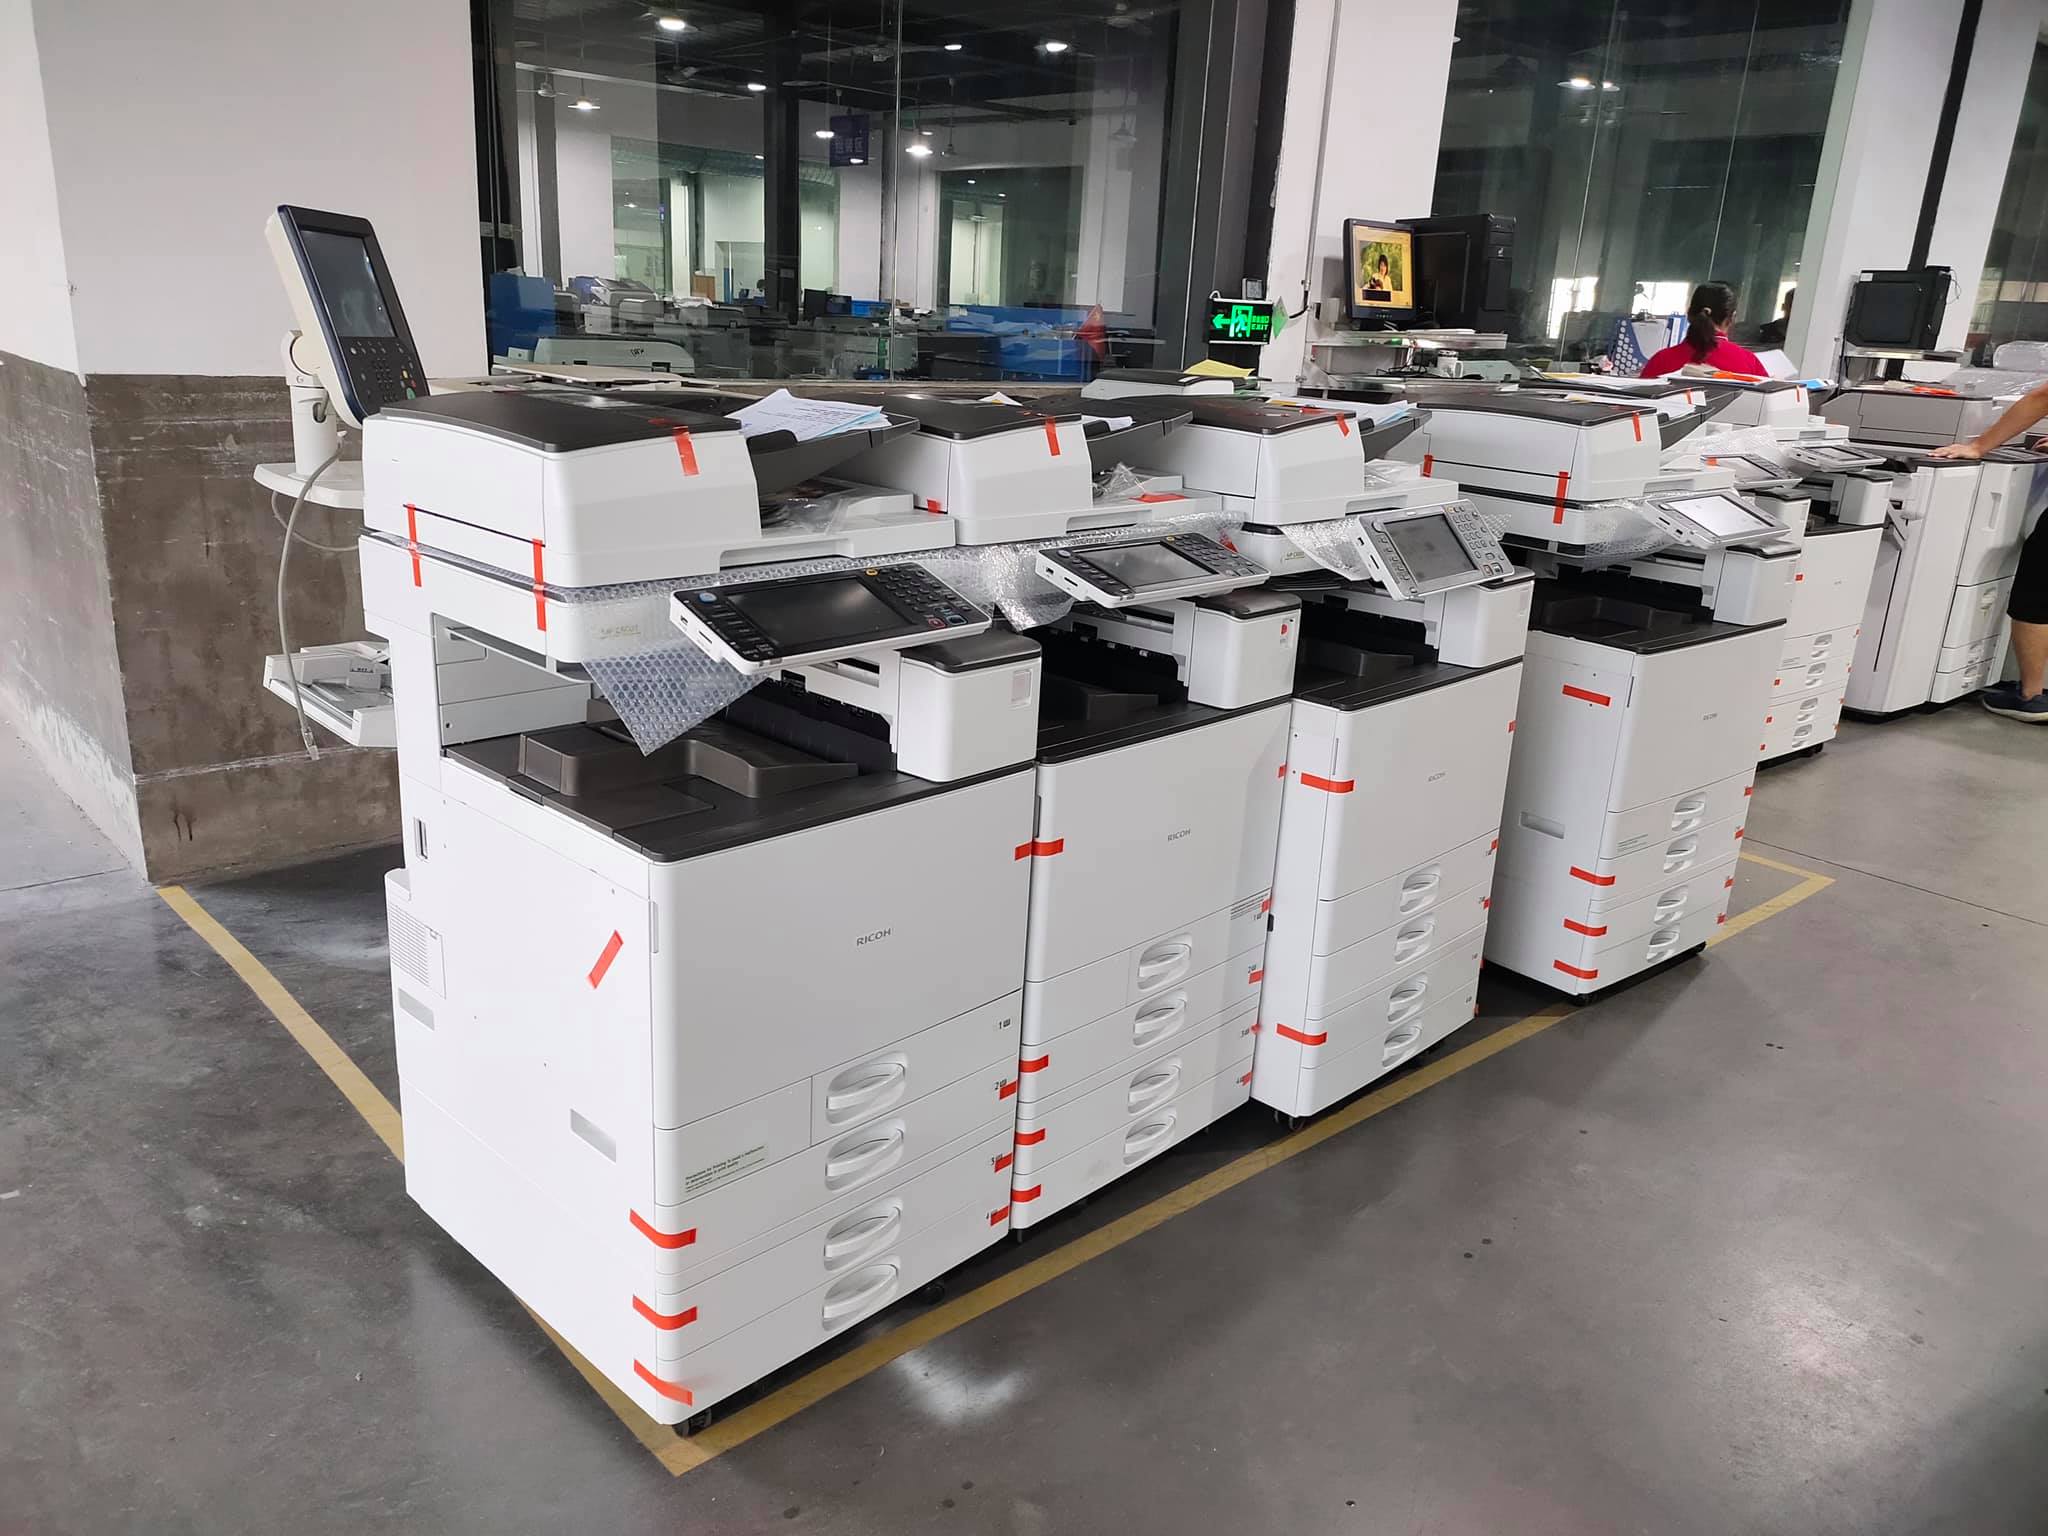 Thuê máy photocopy tại KCN Vsip Cần Thơ - Giả rẻ